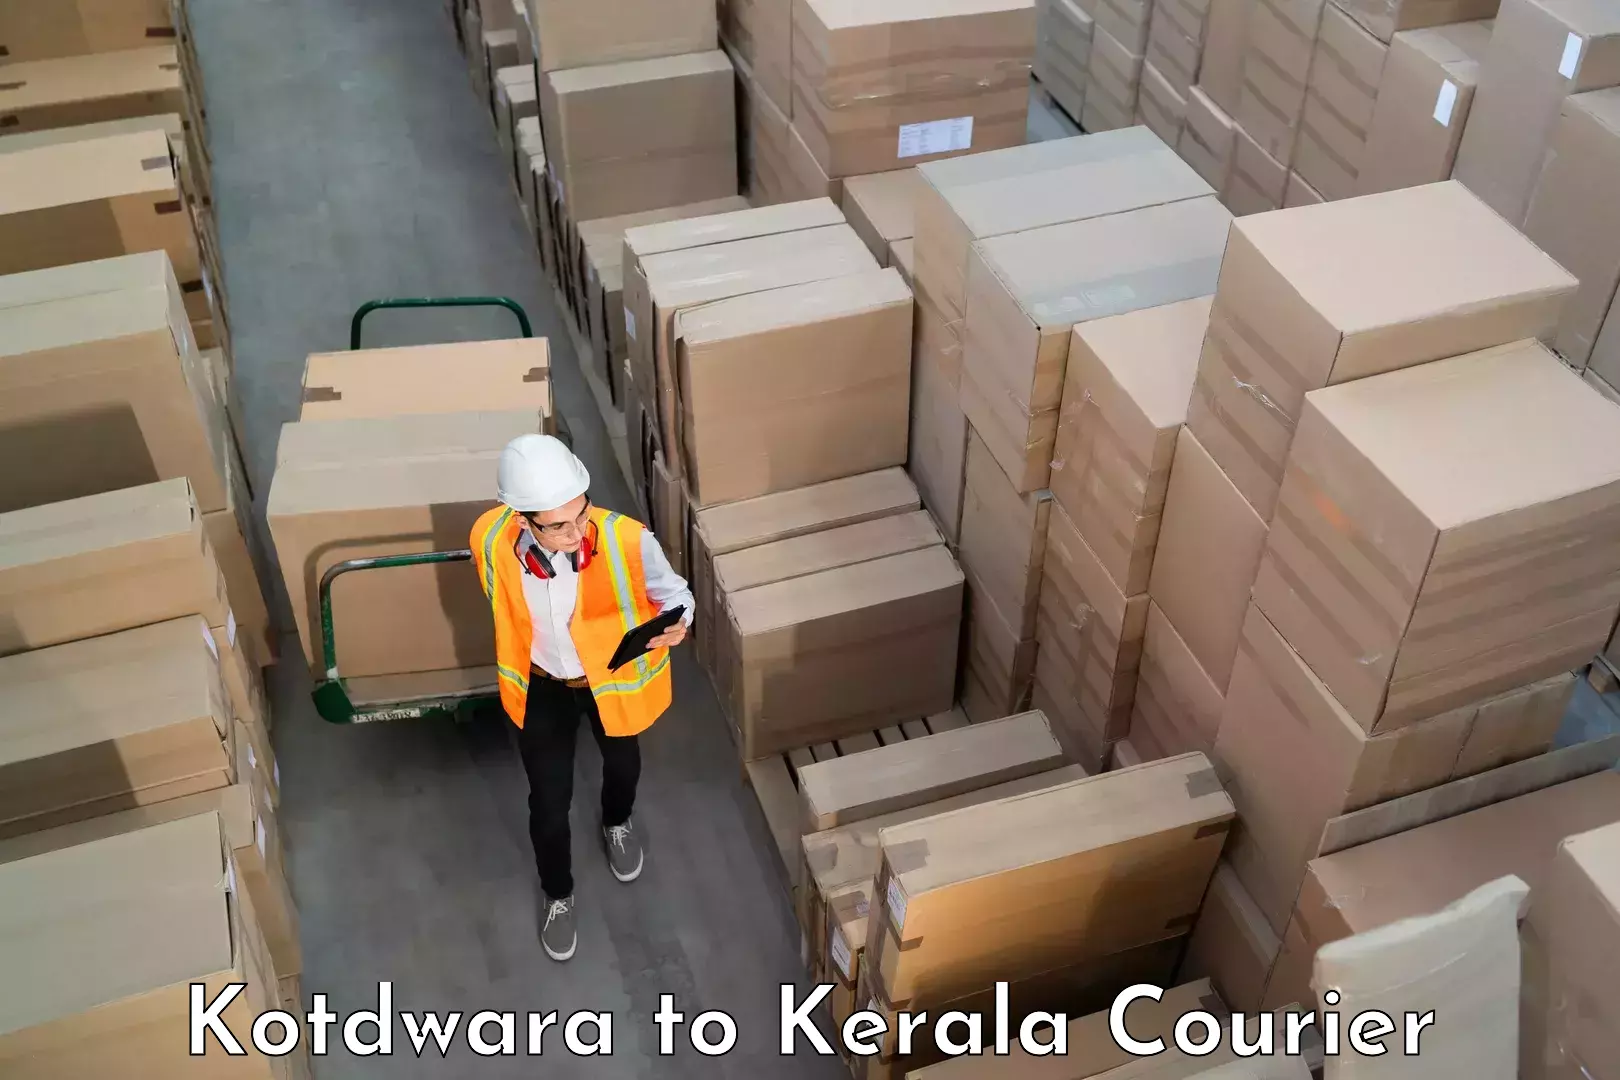 Luggage transport operations Kotdwara to Kalpetta